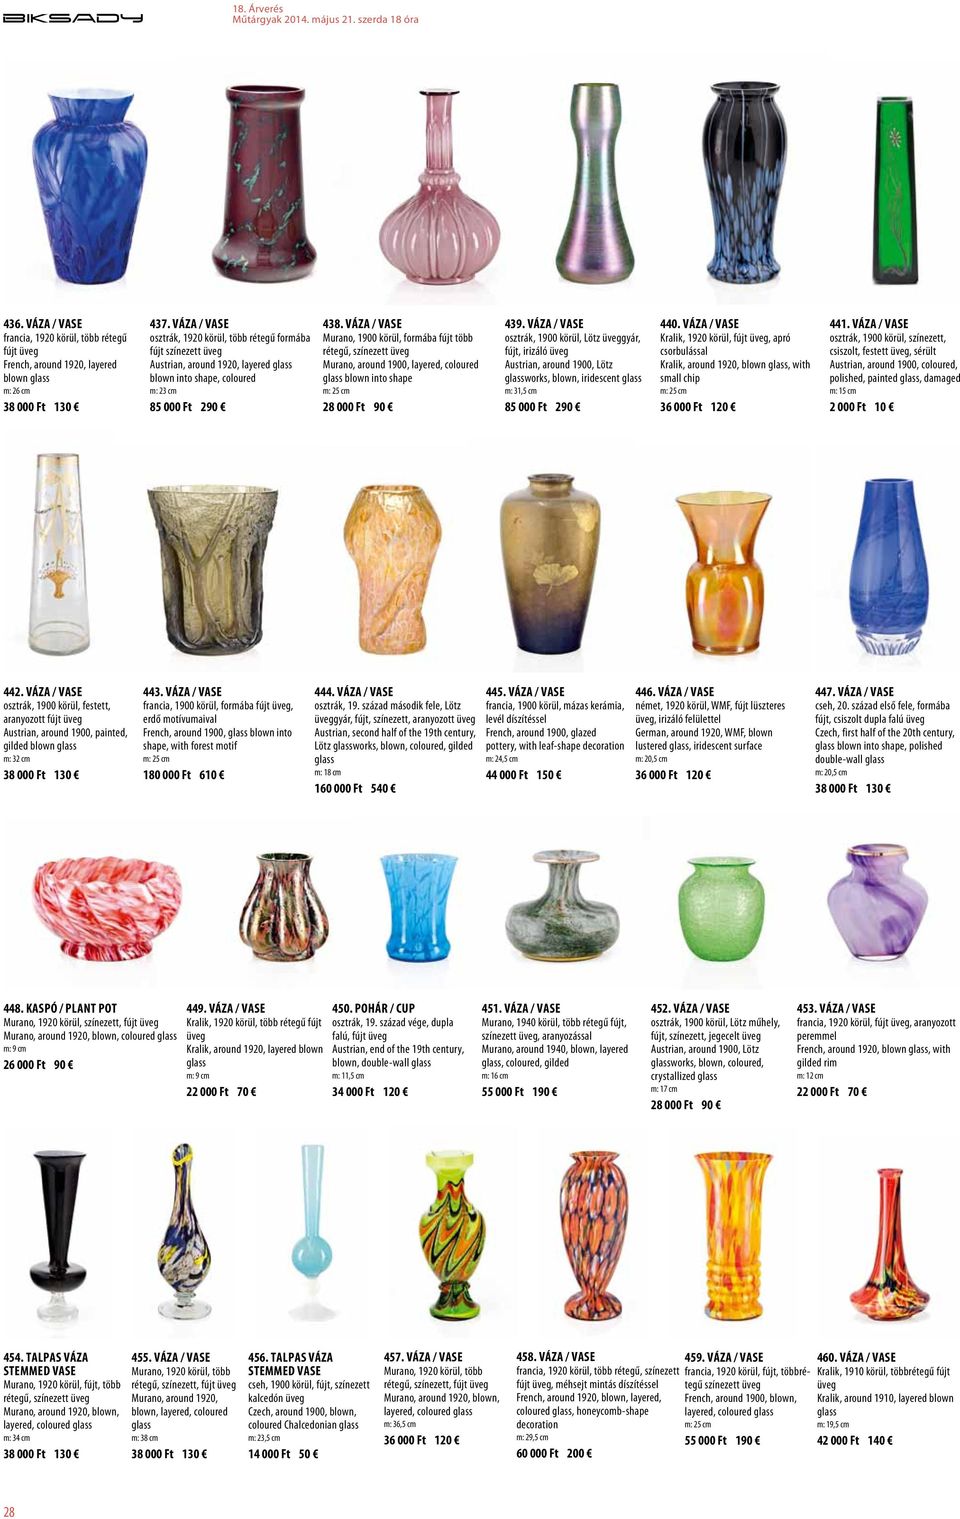 Váza / Vase Murano, 1900 körül, formába fújt több rétegű, színezett Murano, around 1900, layered, coloured blown into shape m: 25 cm 439.